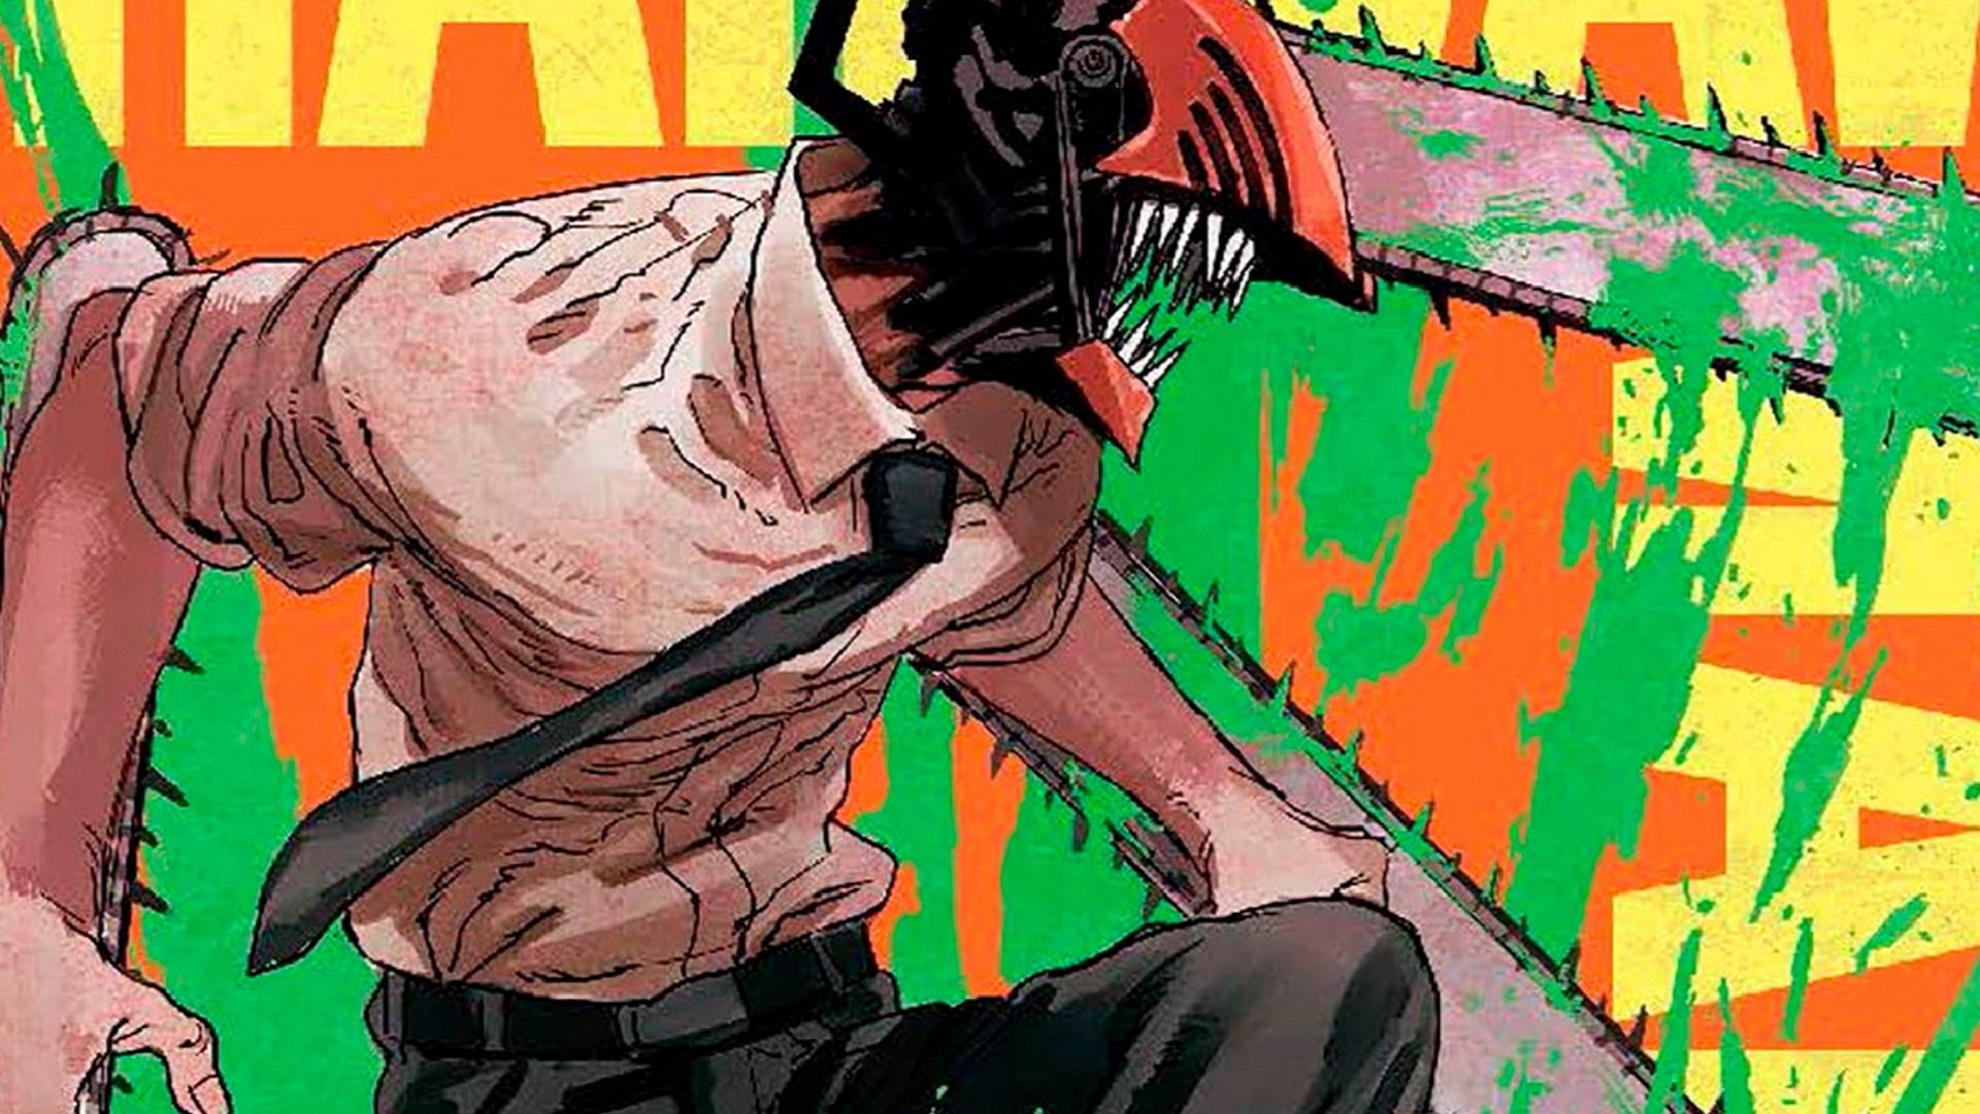 Chainsaw Man: horario y dónde leer en español el capítulo 146 del manga